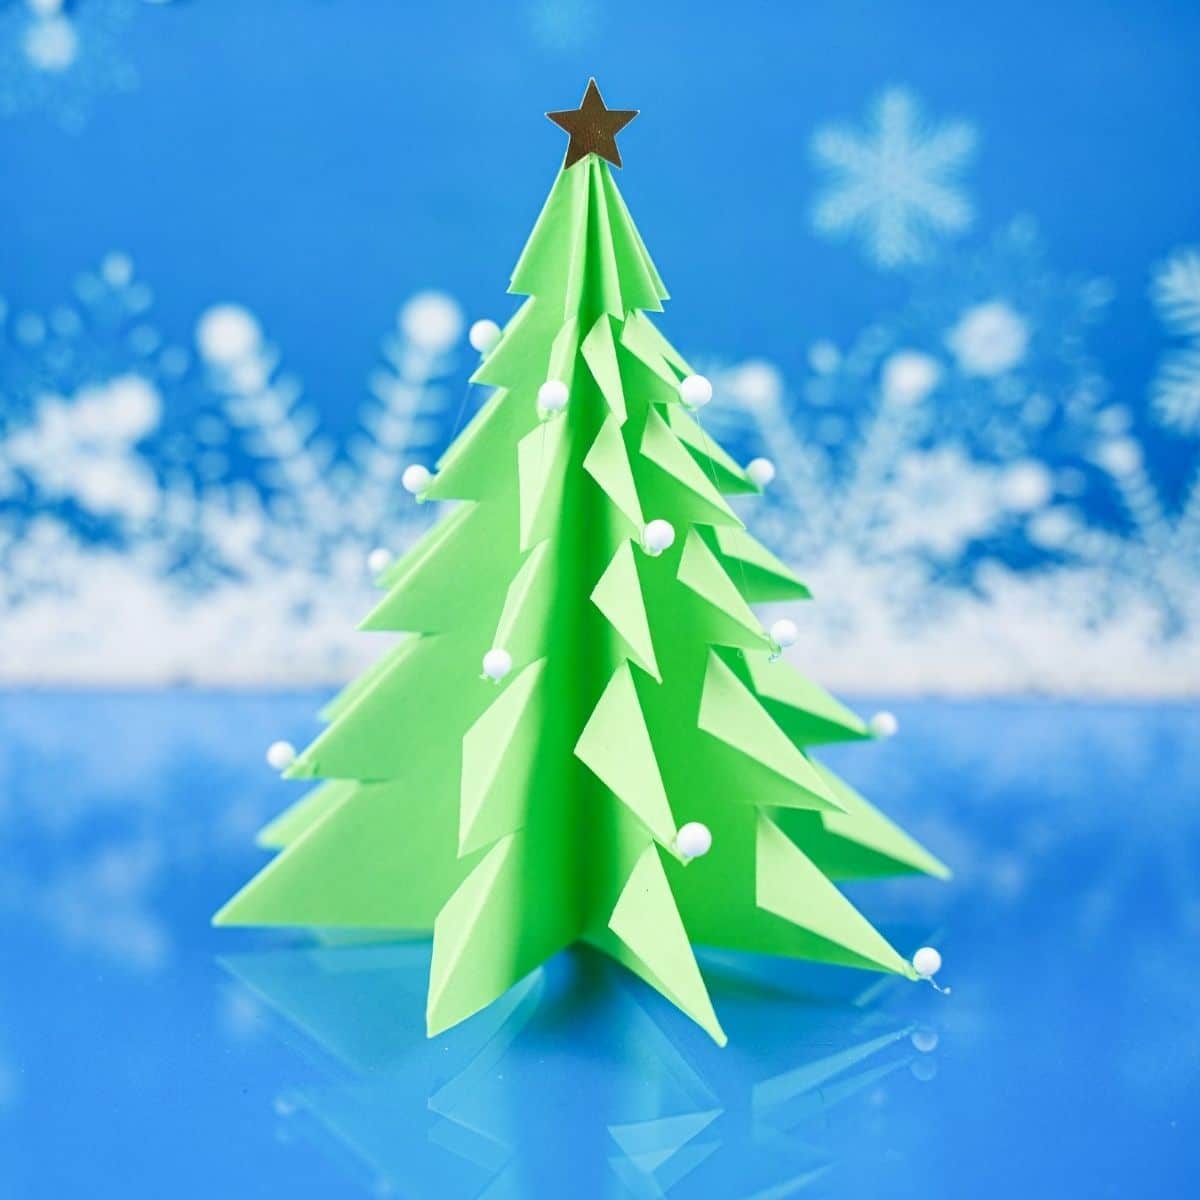 Синий снежный фон за зеленым бумажным деревом